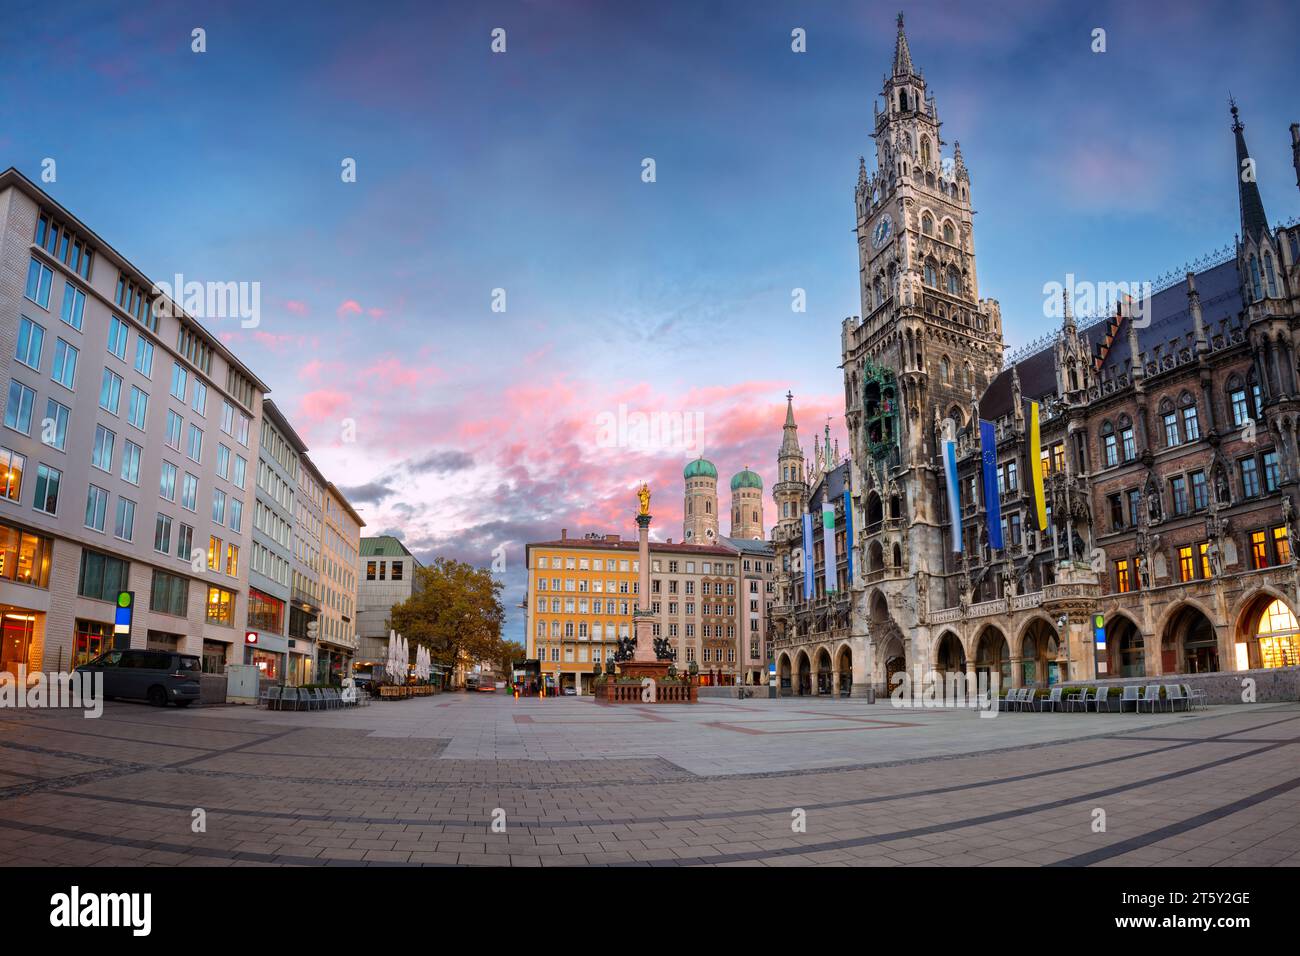 München, Deutschland. Stadtbild der Innenstadt von München, Deutschland mit Marienplatz bei schönem Sonnenaufgang im Herbst. Stockfoto